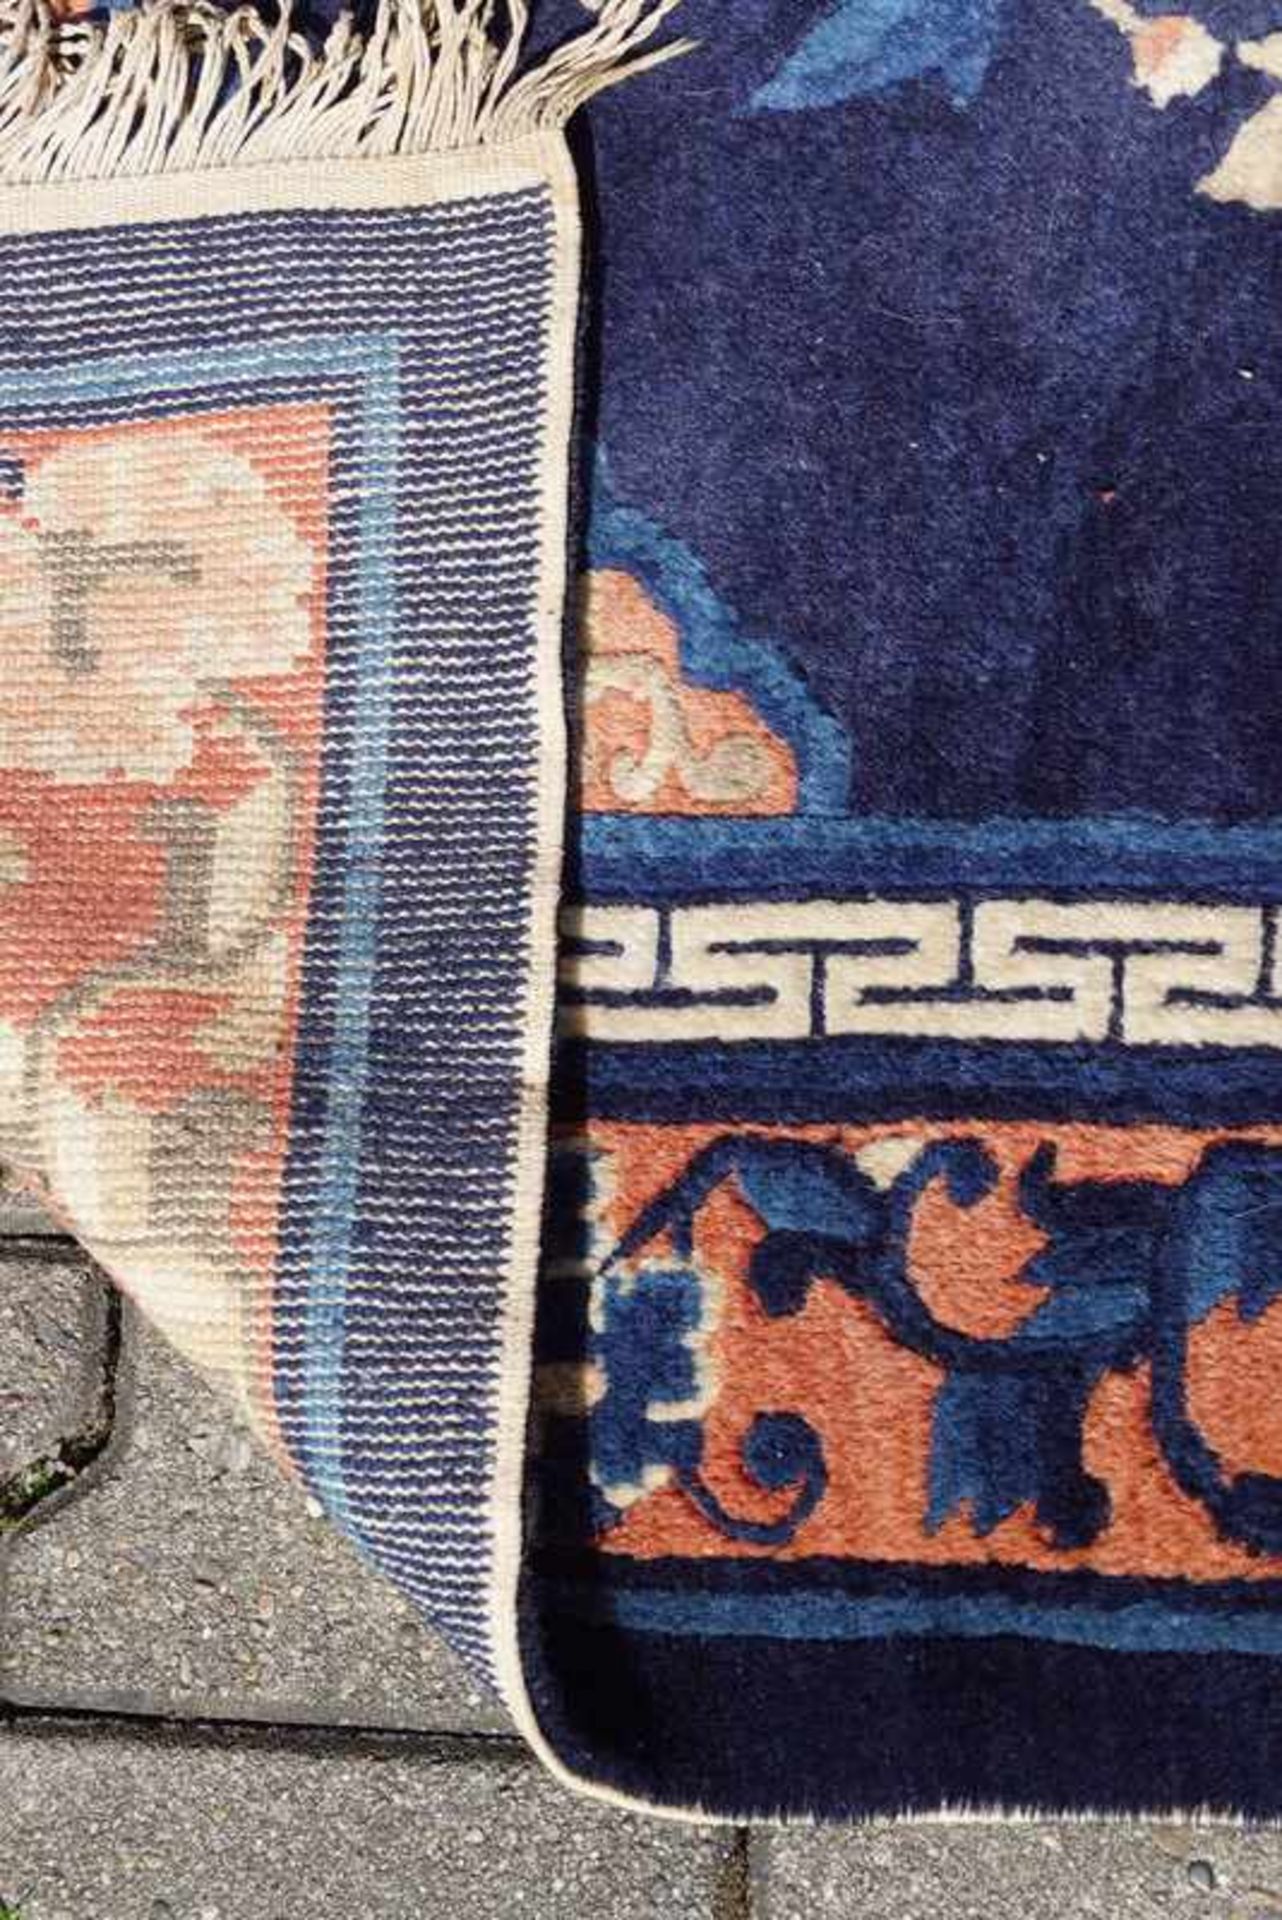 Chinesischer Pao-Thao Pekingteppich Anilinfarben, Manchester Wolle auf Wolle, gepflegter